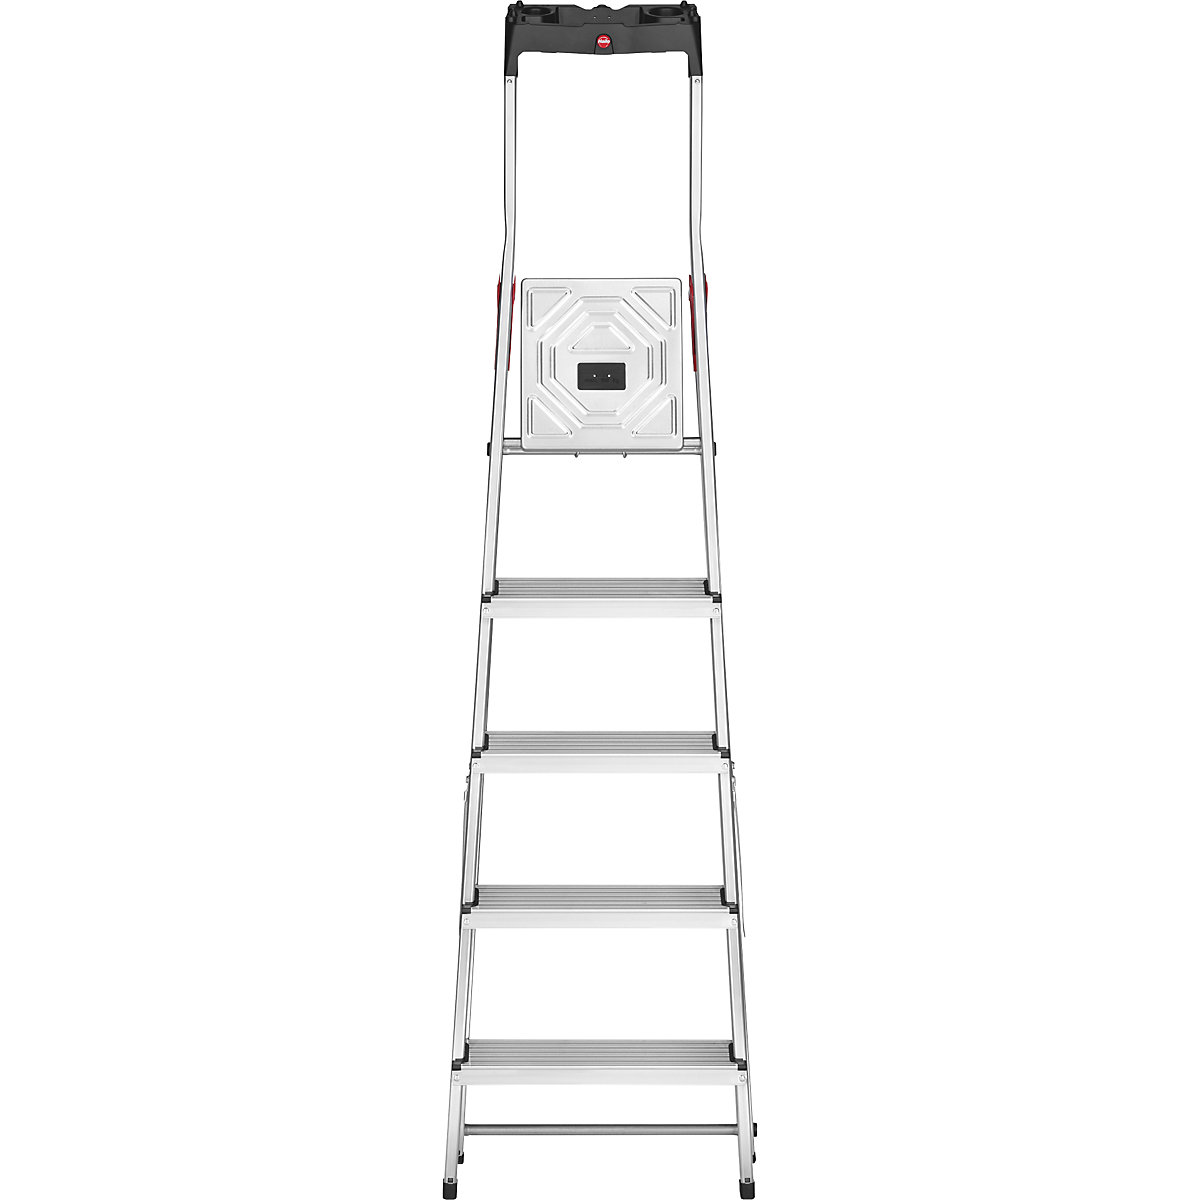 Aluminijasta dvokraka lestev s stopnicami StandardLine L60 – Hailo (Slika izdelka 13)